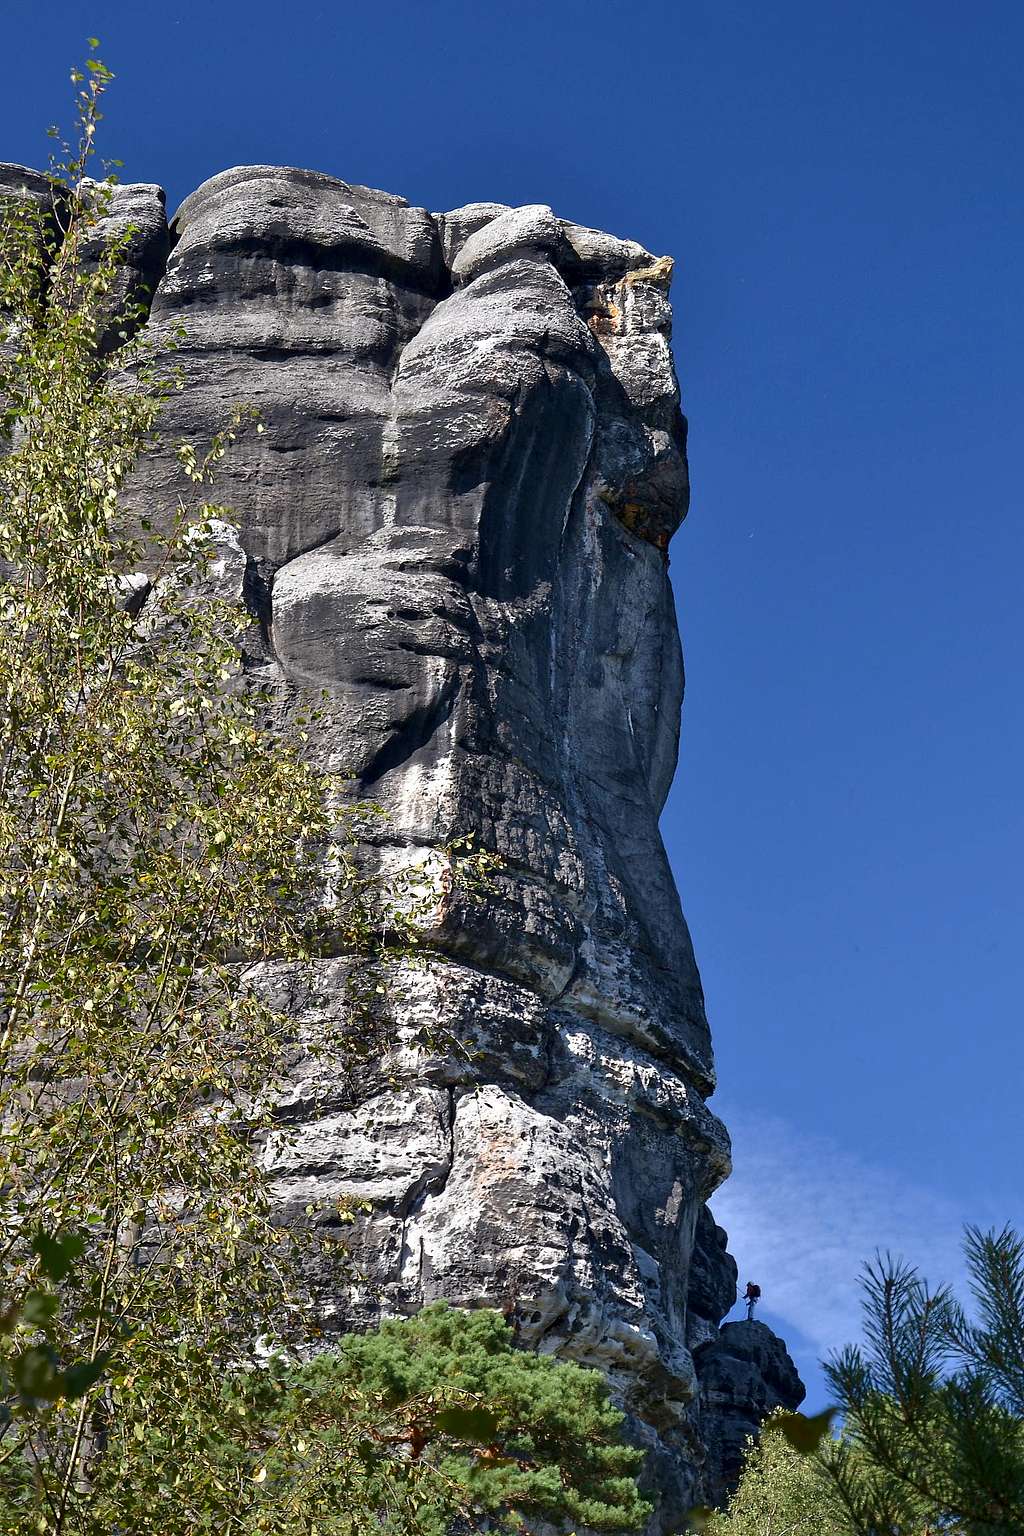 A climber going up Falkenstein